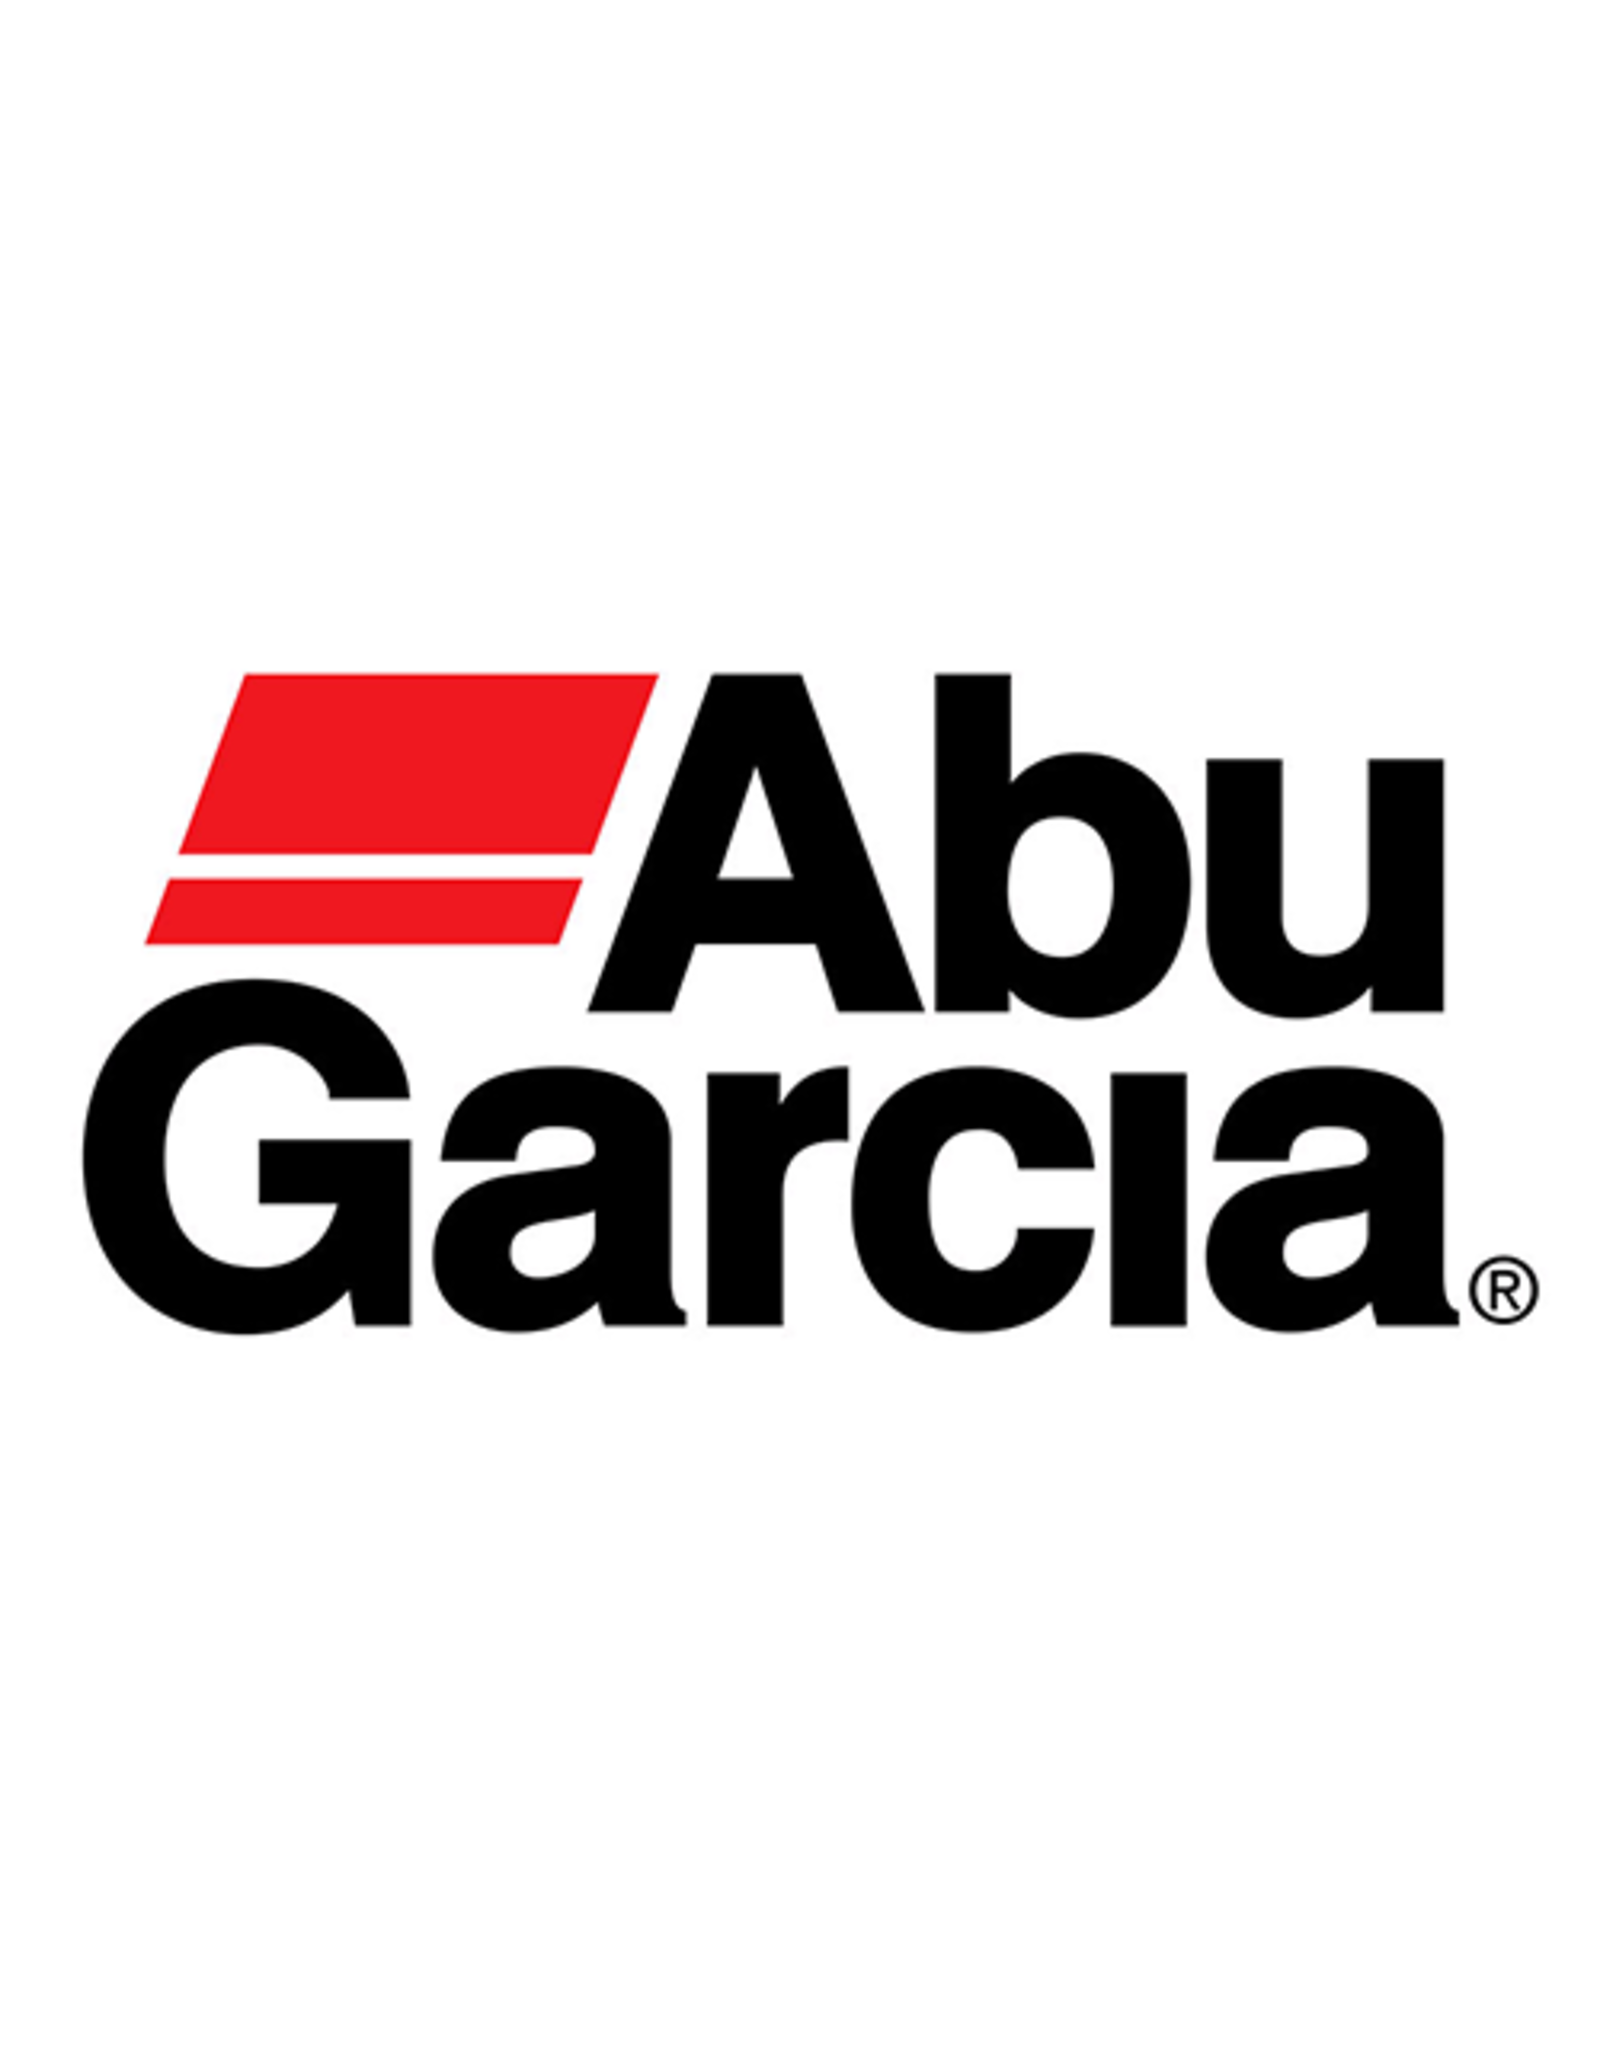 Abu Garcia 9182492  ROLLER BEARING/NLA